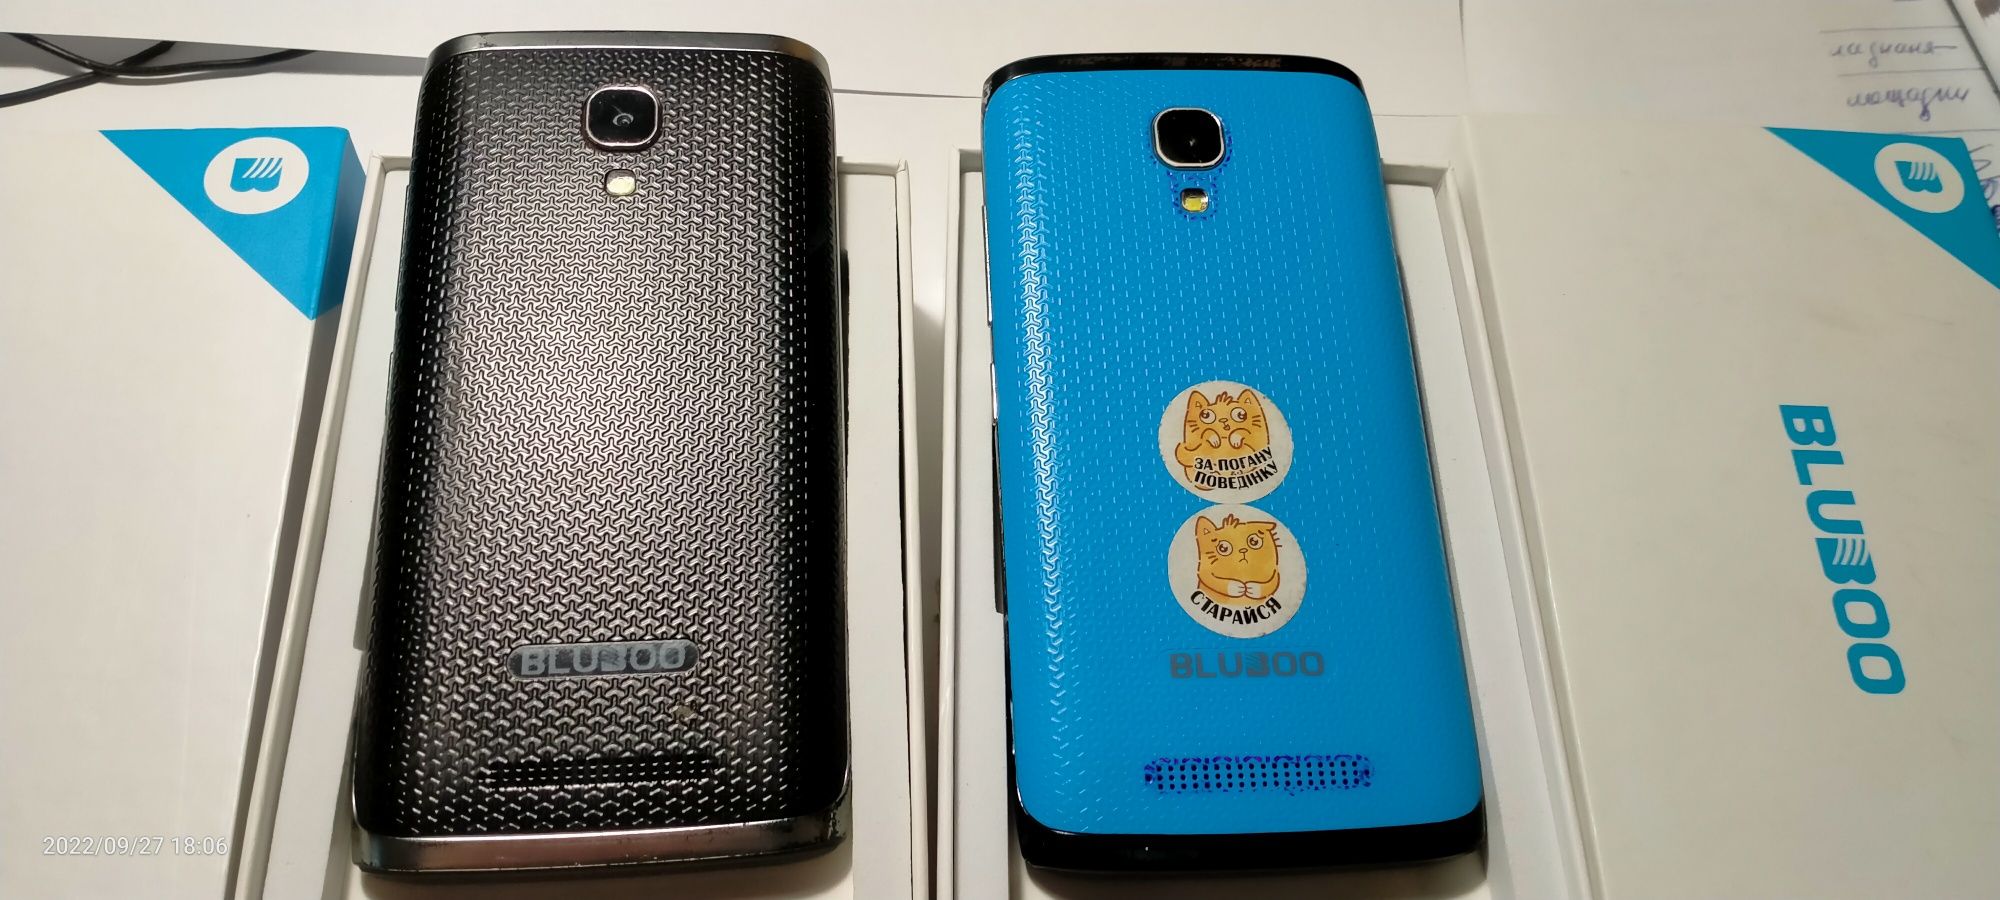 Телефони Bluboo Mini (2шт) під відновлення чи на запчастини